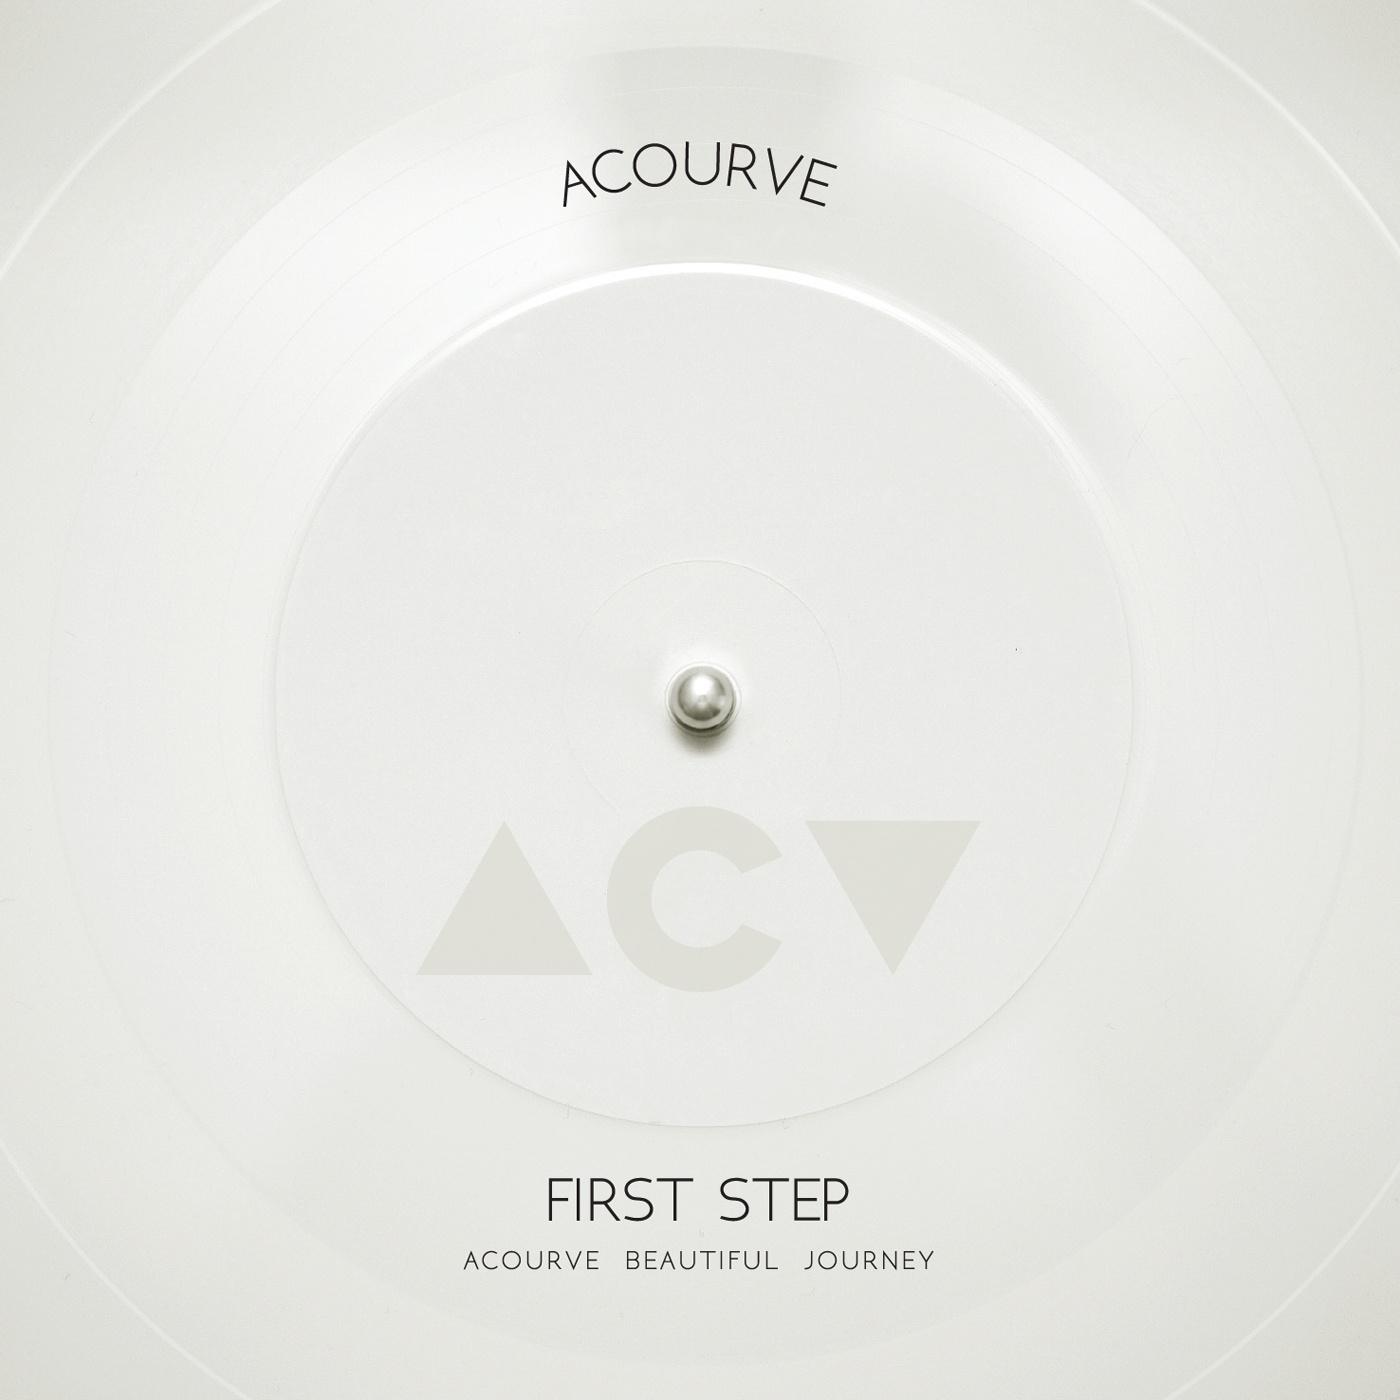 우연이라도歌词 歌手Acourve-专辑FIRST STEP-单曲《우연이라도》LRC歌词下载